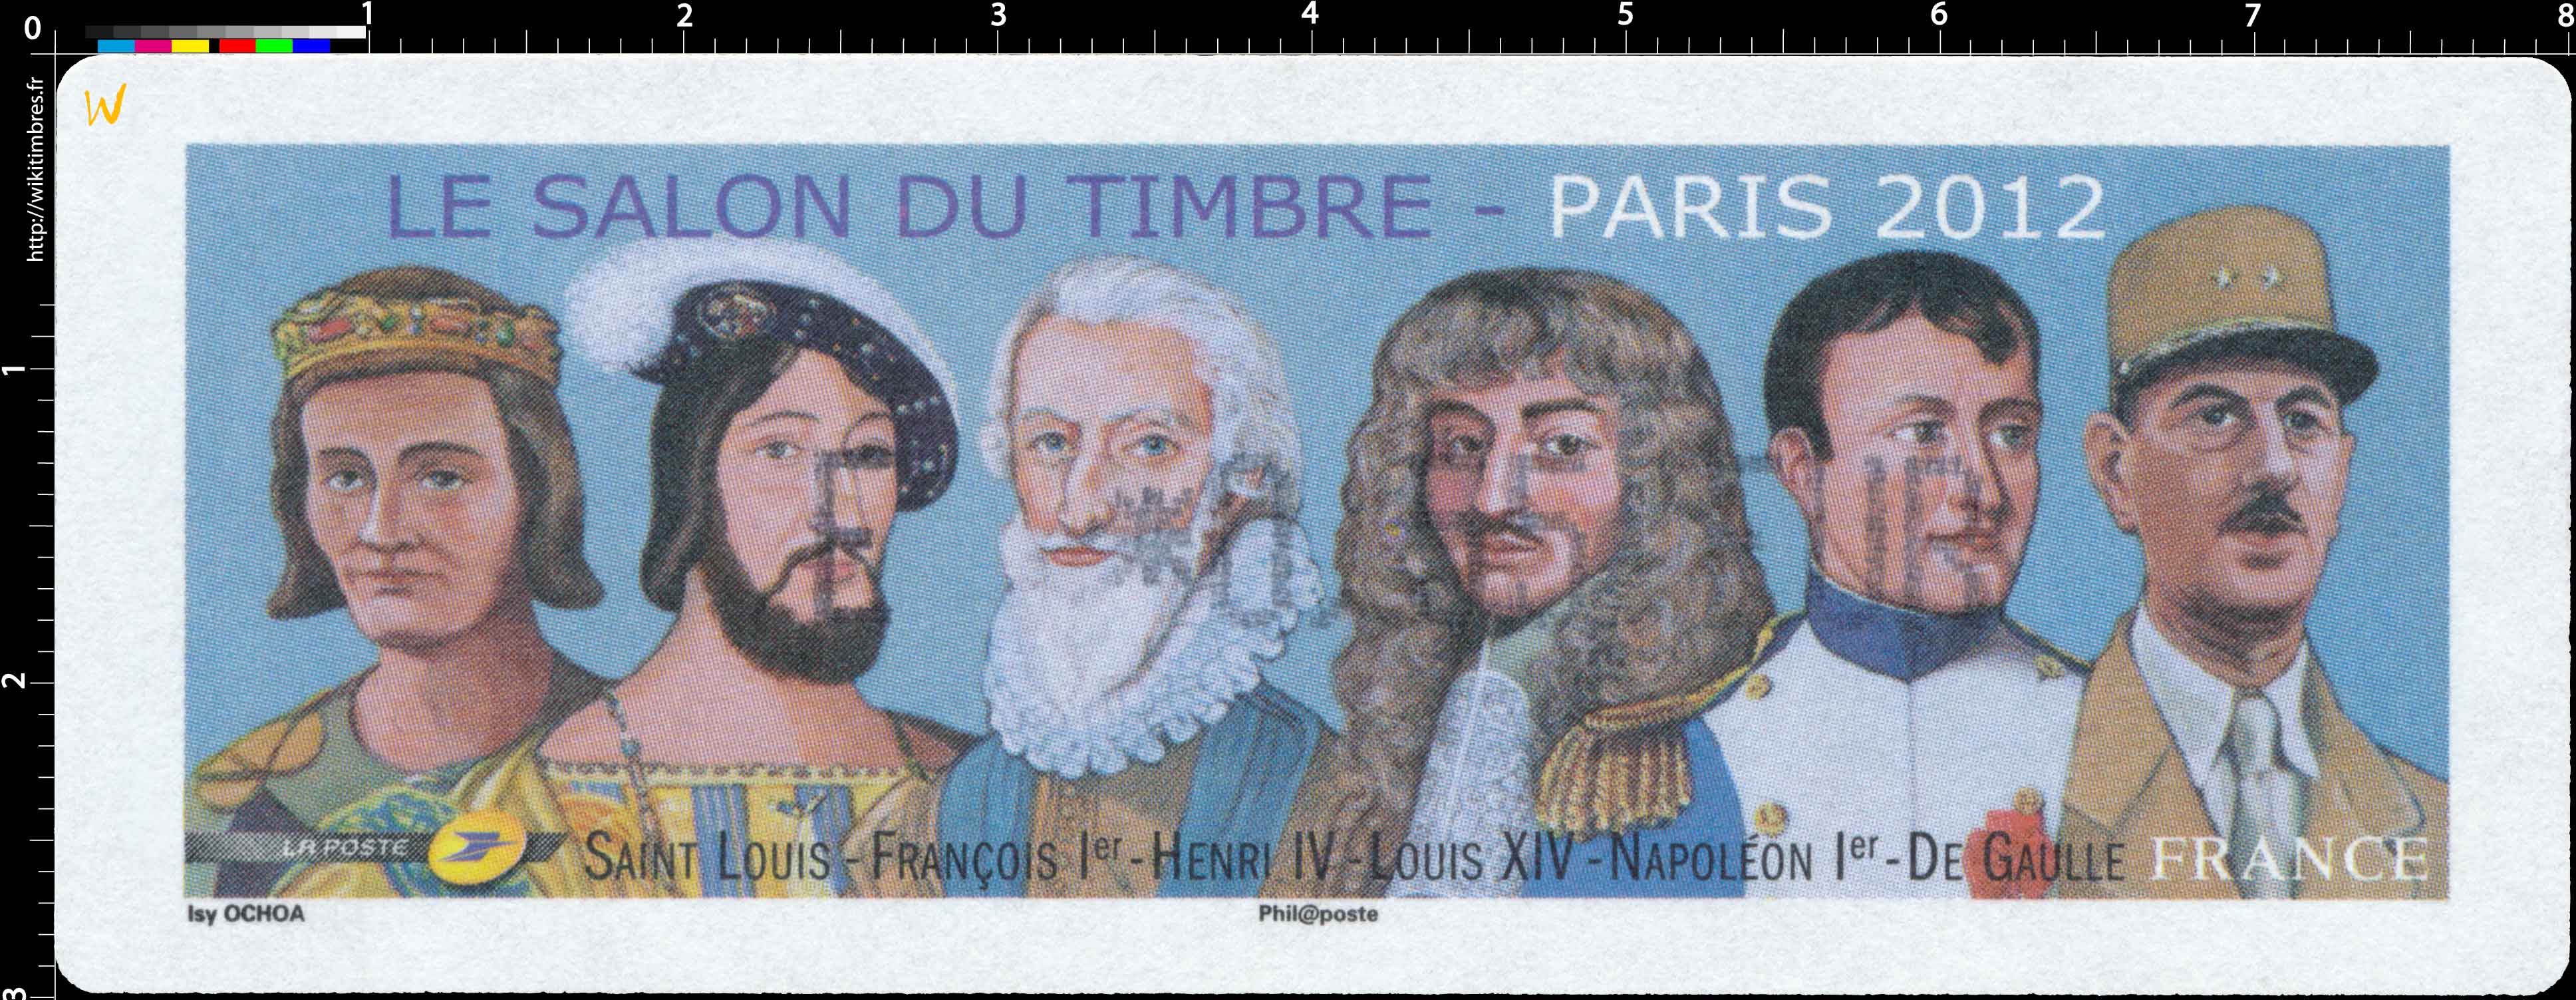 2012 Salon du timbre